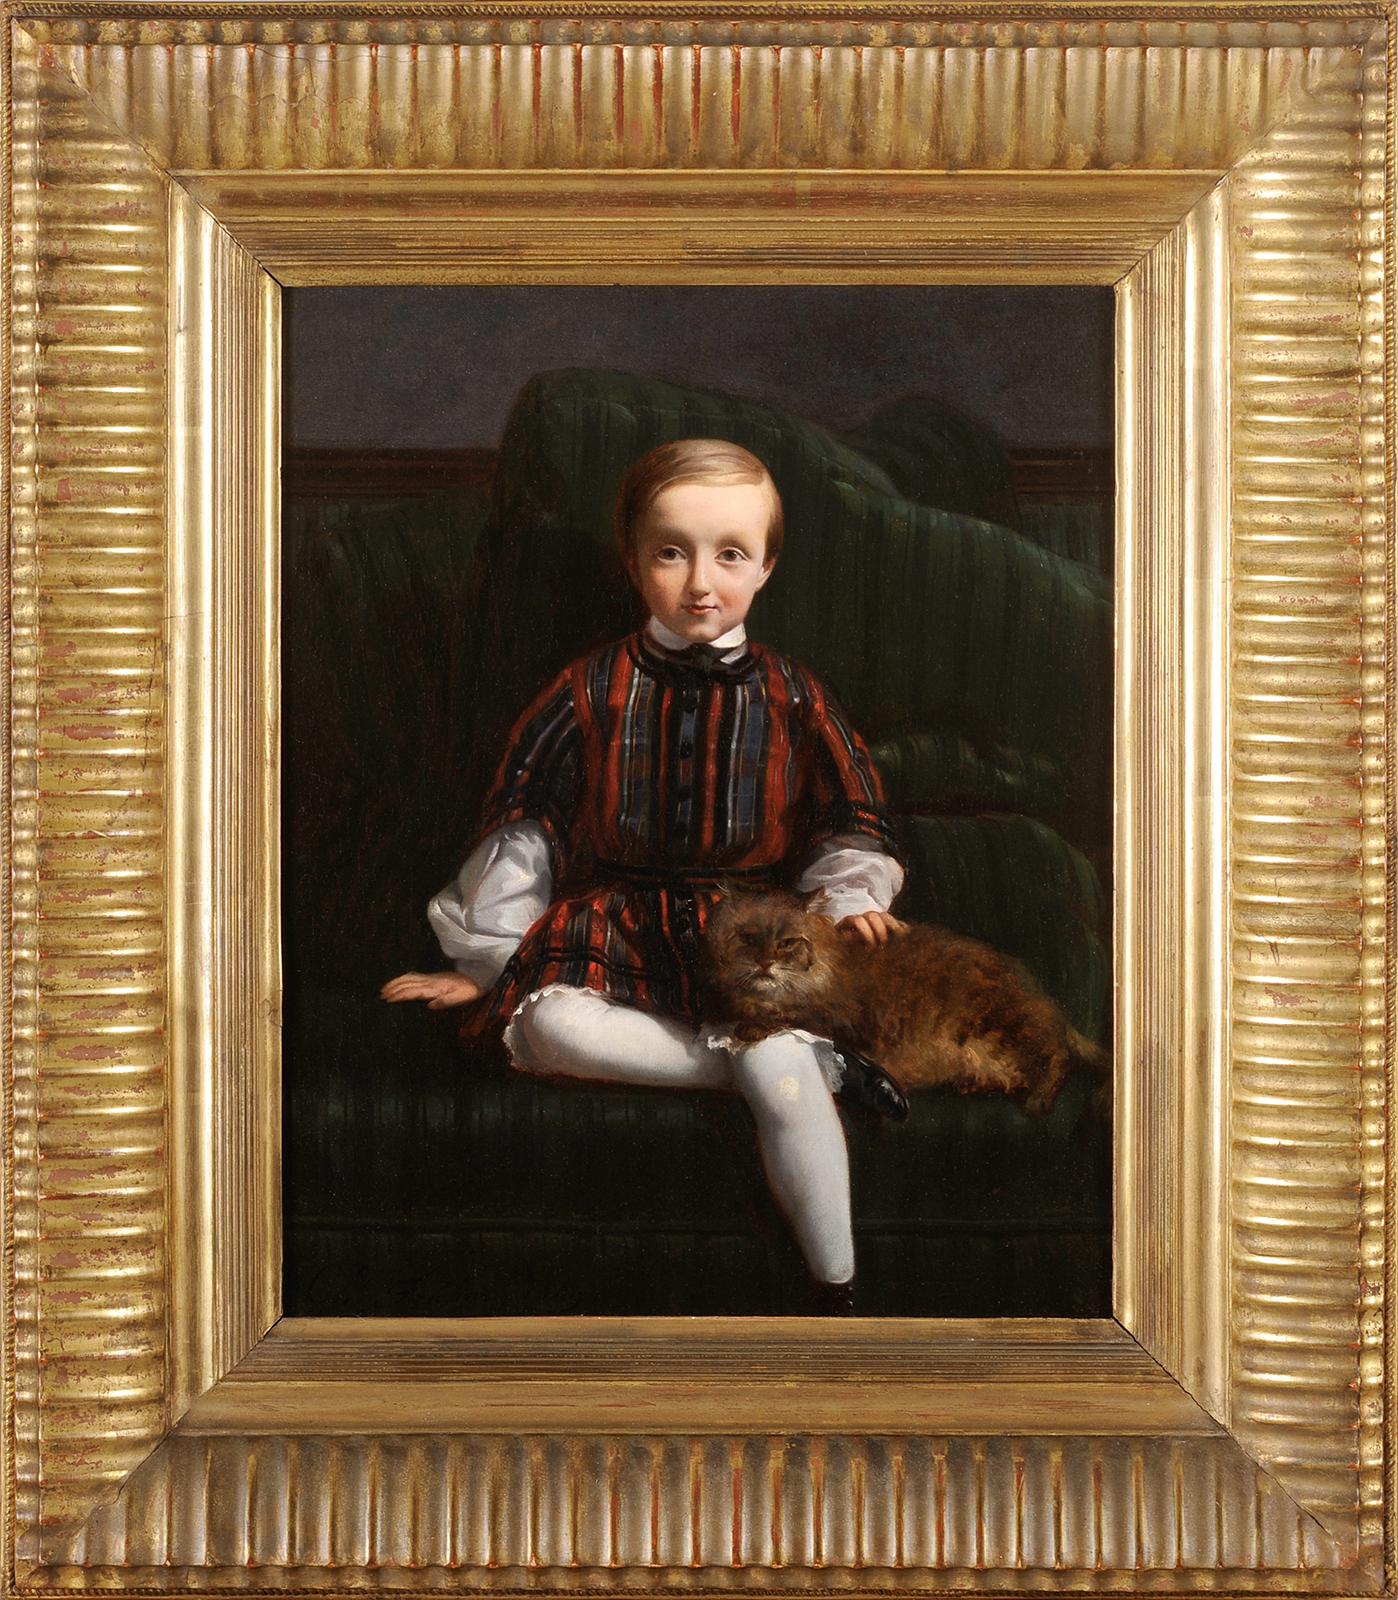 Charles FRÉCHOU
(Paris 1820 - Paris 1900)
Portrait d'un enfant avec un chat
Huile sur toile
H. 41 cm ; L. 33 cm
Signé en bas à gauche et daté 1849

Hormis sa participation au Salon entre 1841 et 1888, très peu d'éléments de sa vie nous sont